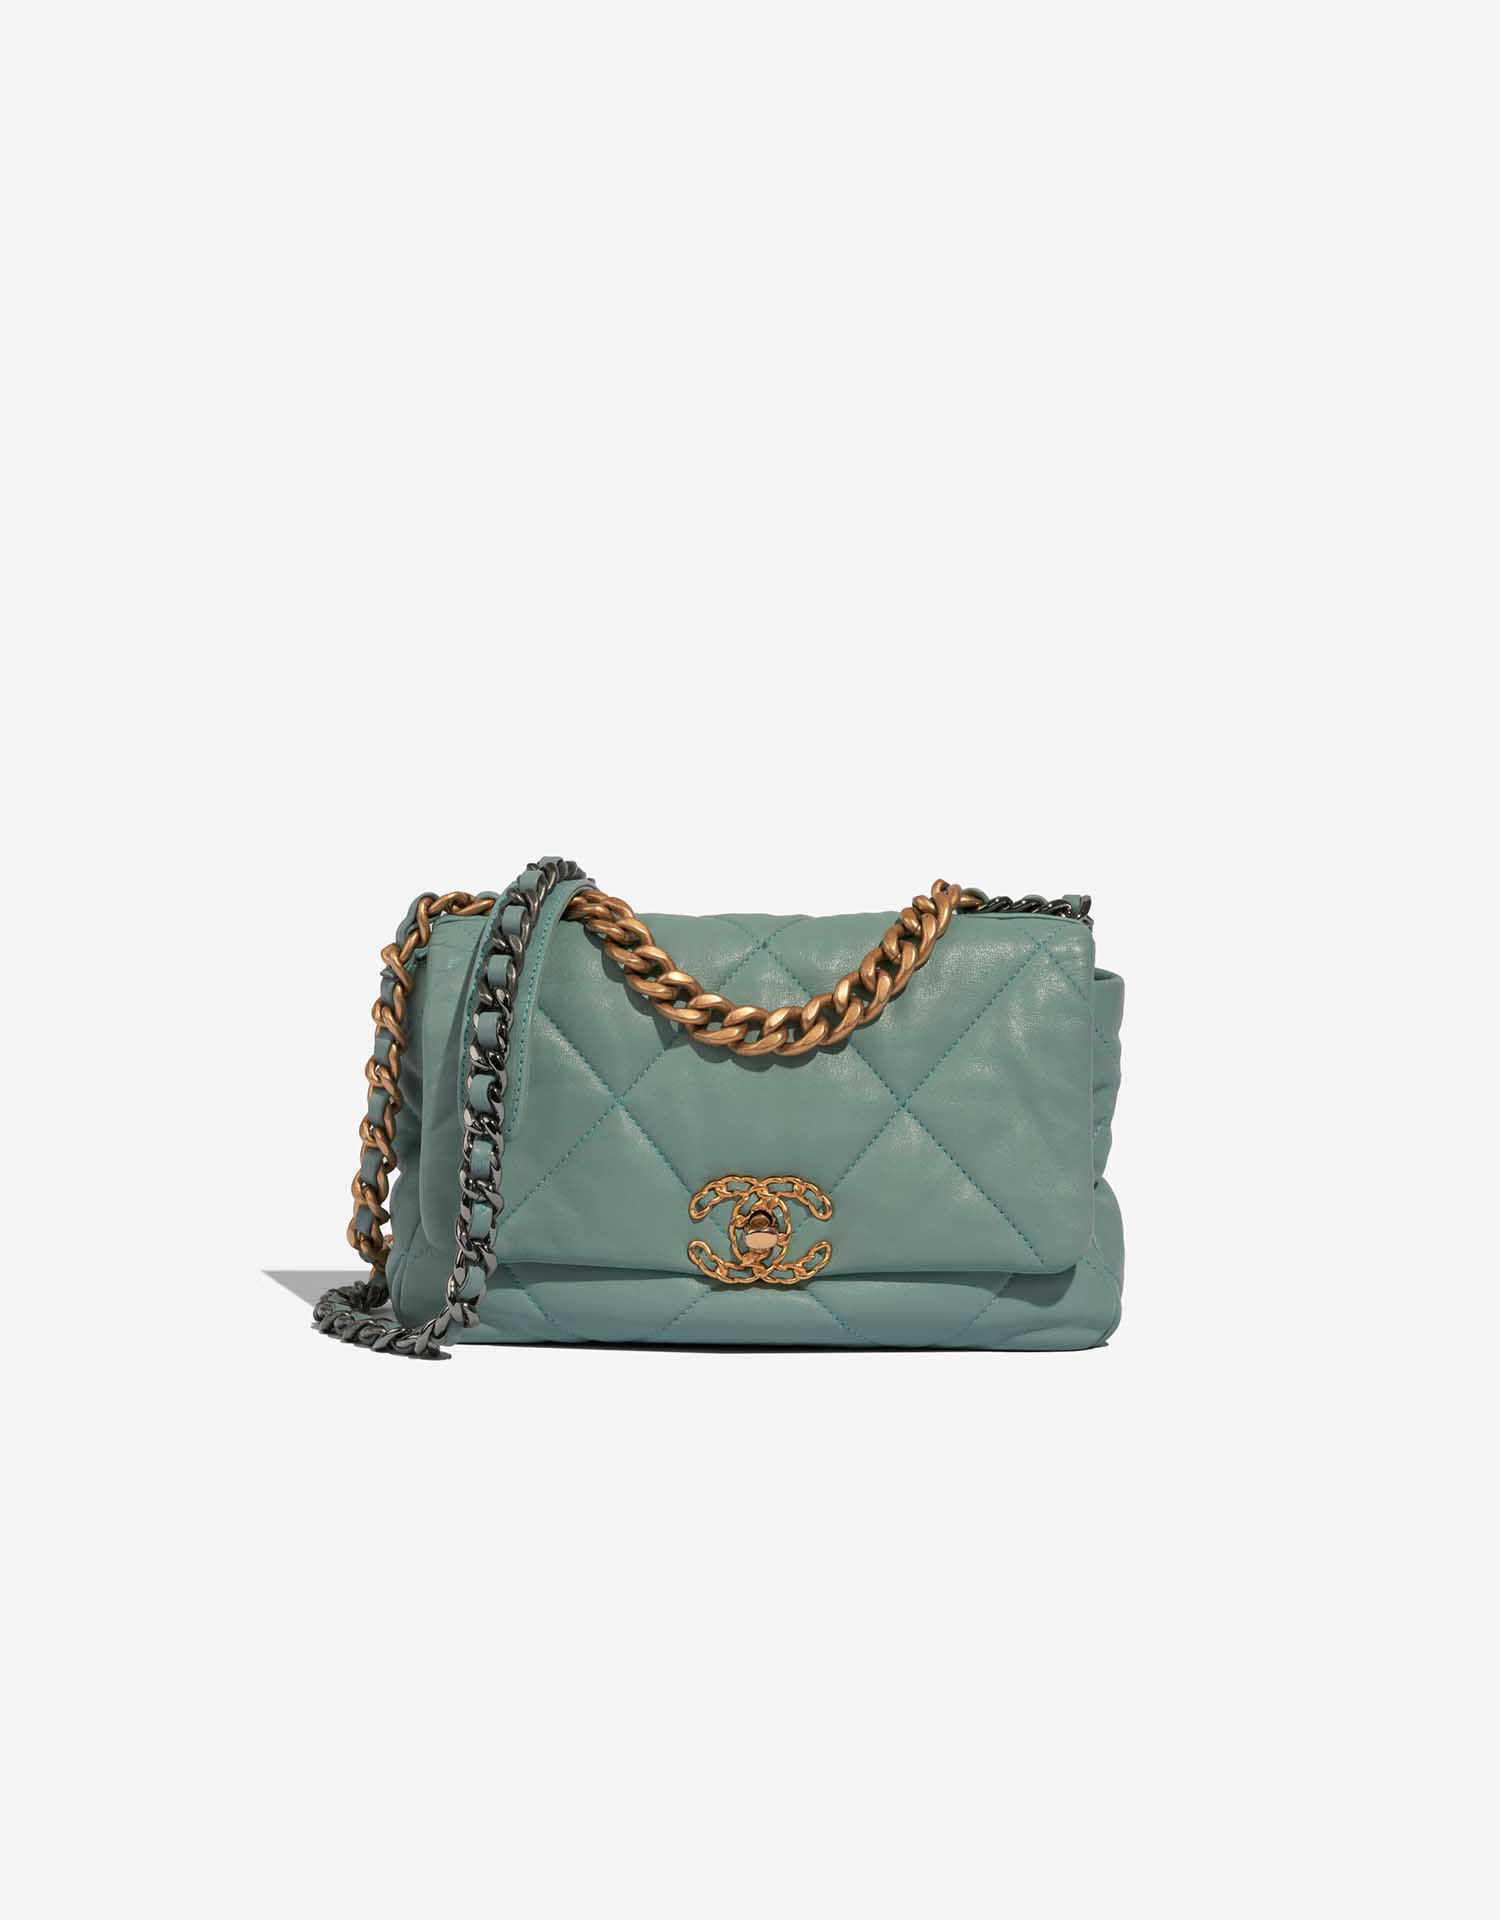 Chanel 19 Flap Bag Lamb Turquoises